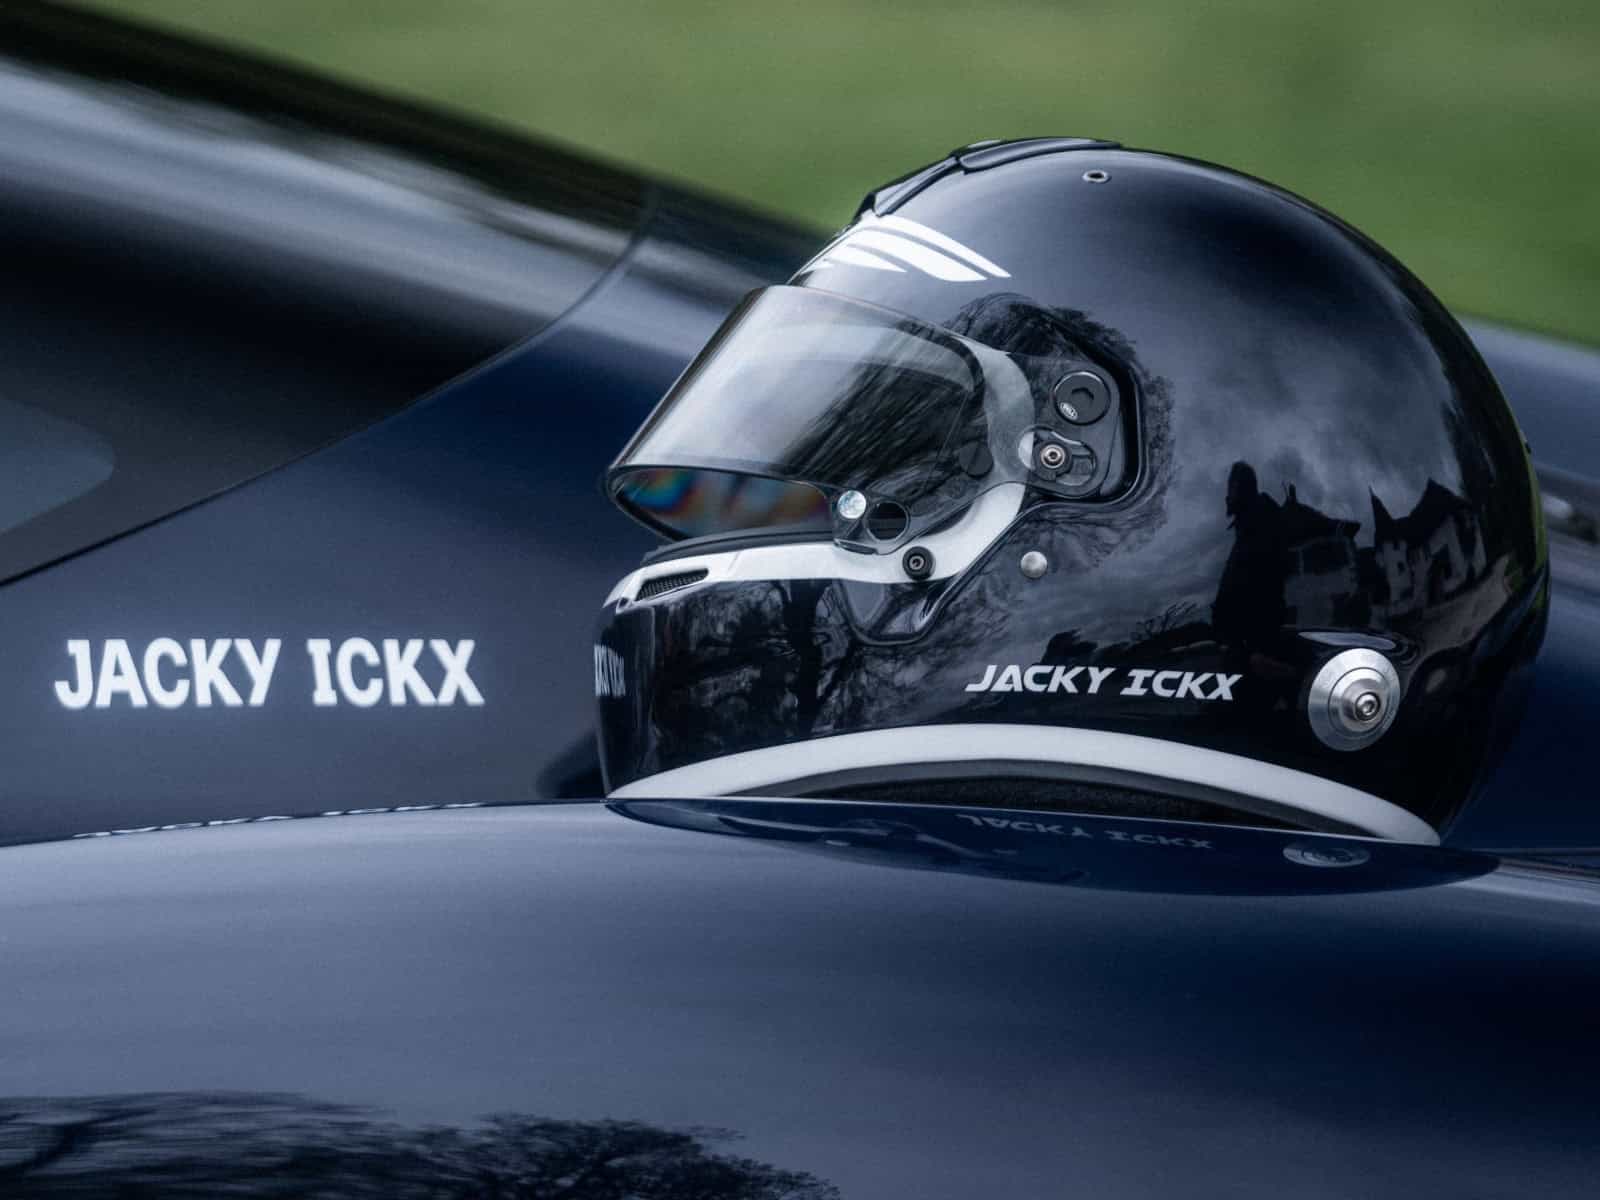 Jacky Ickx Helm im charakteristischen Farbton